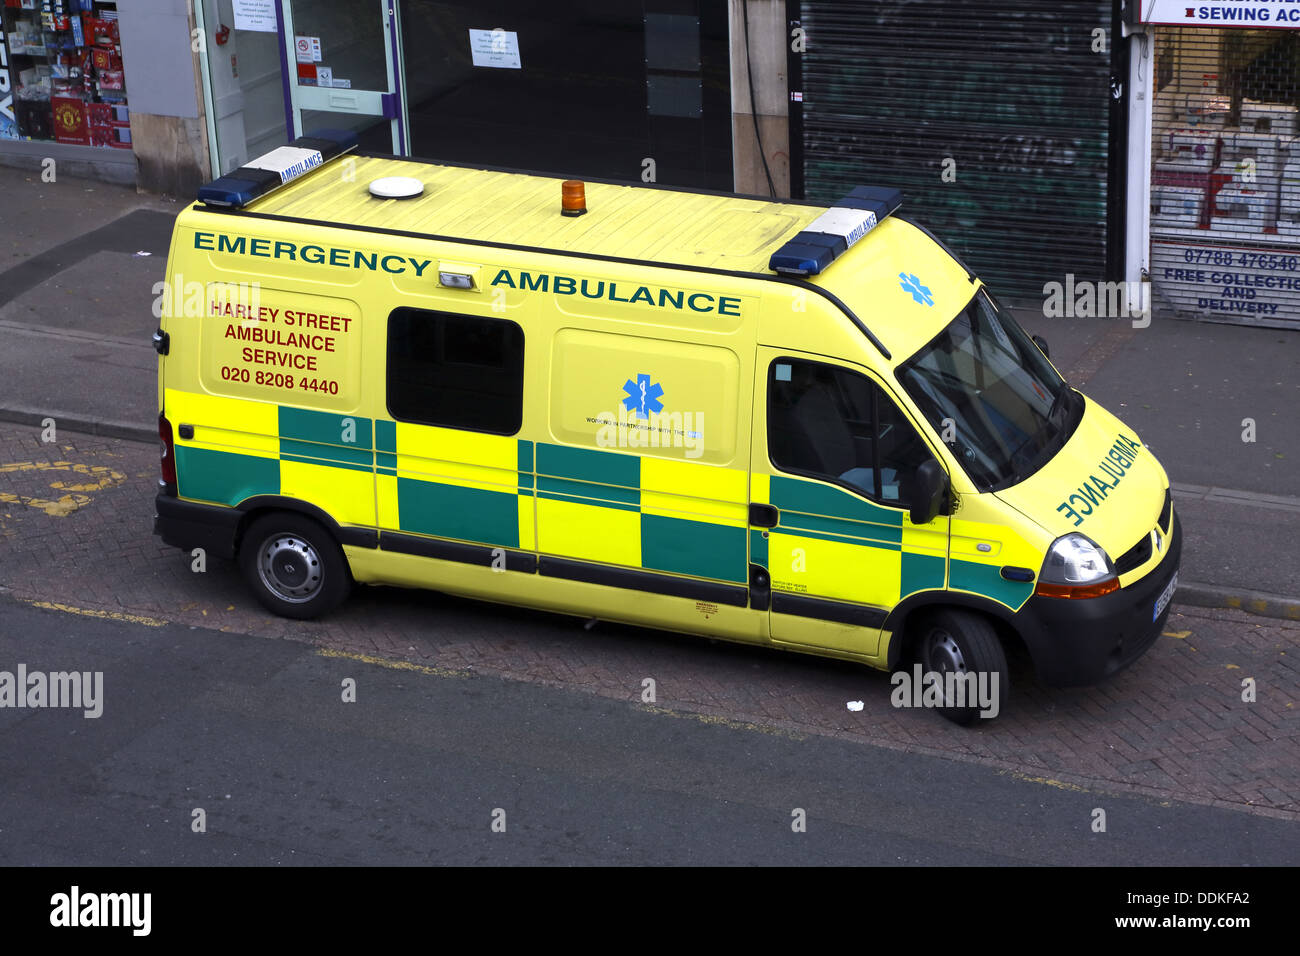 Emergency ambulance. Stock Photo